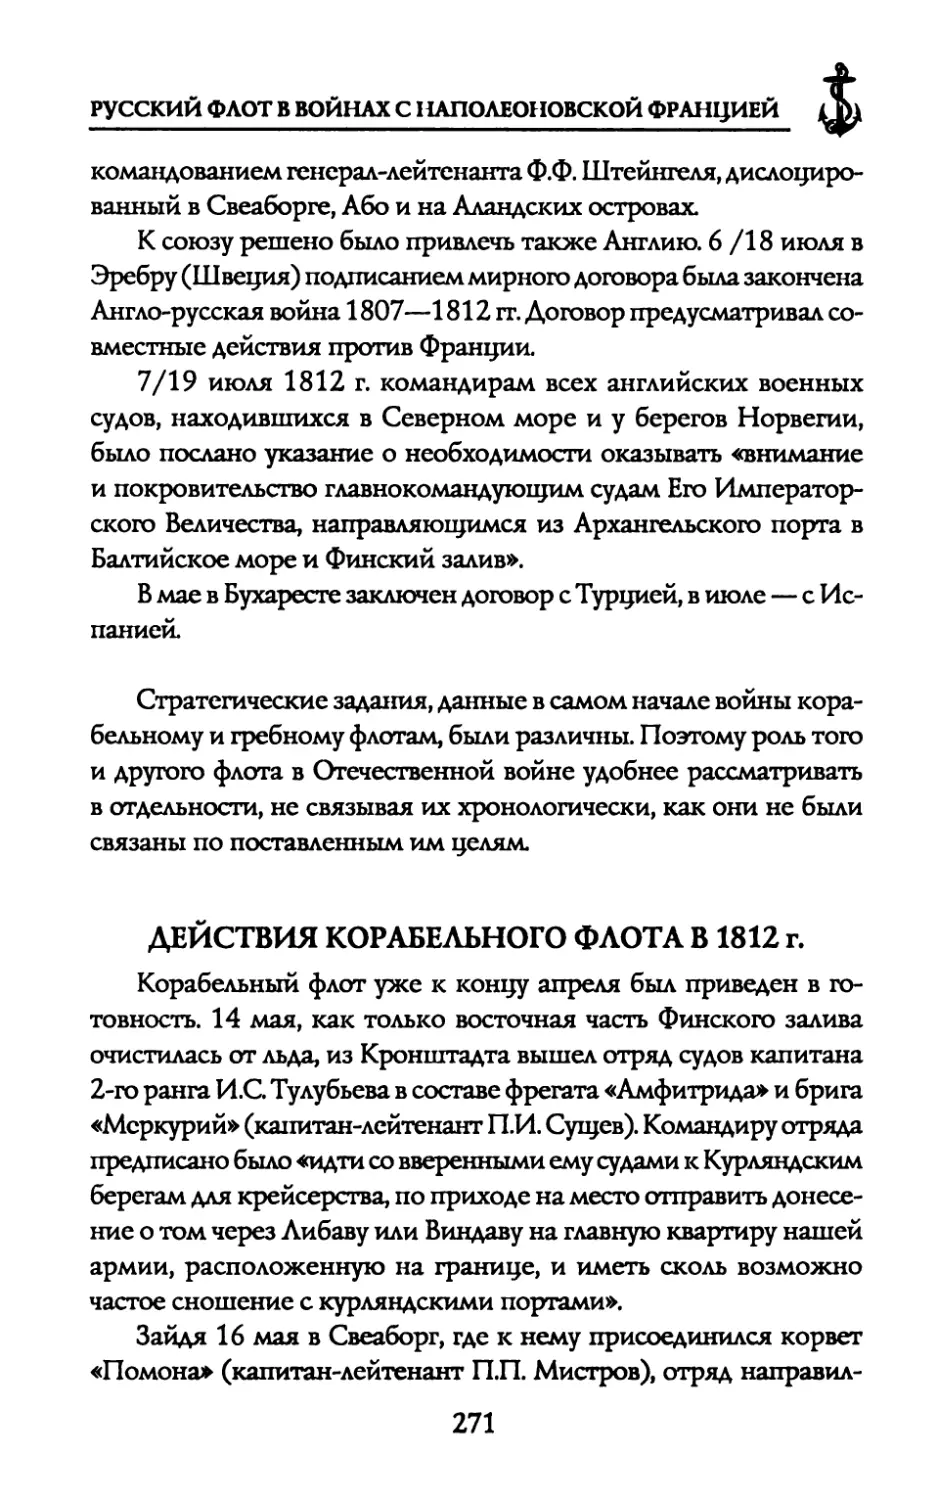 ДЕЙСТВИЯ КОРАБЕЛЬНОГО ФЛОТА В 1812 г.